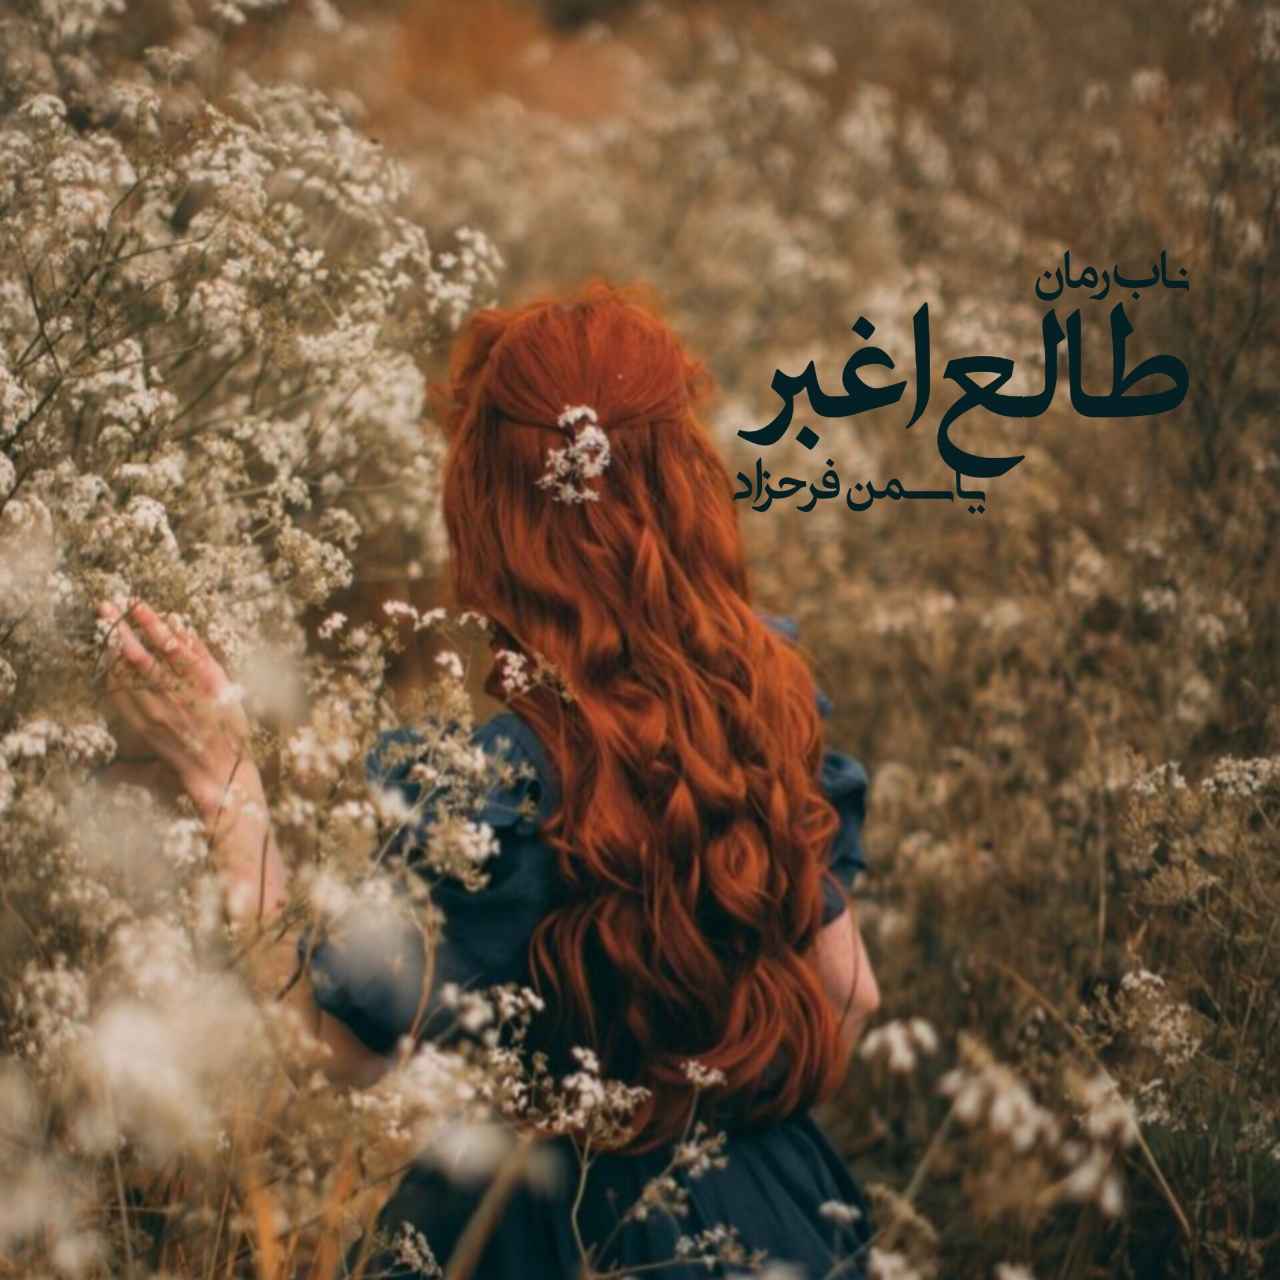 دانلود رمان طالع اغبر pdf از یاسمن فرحزاد